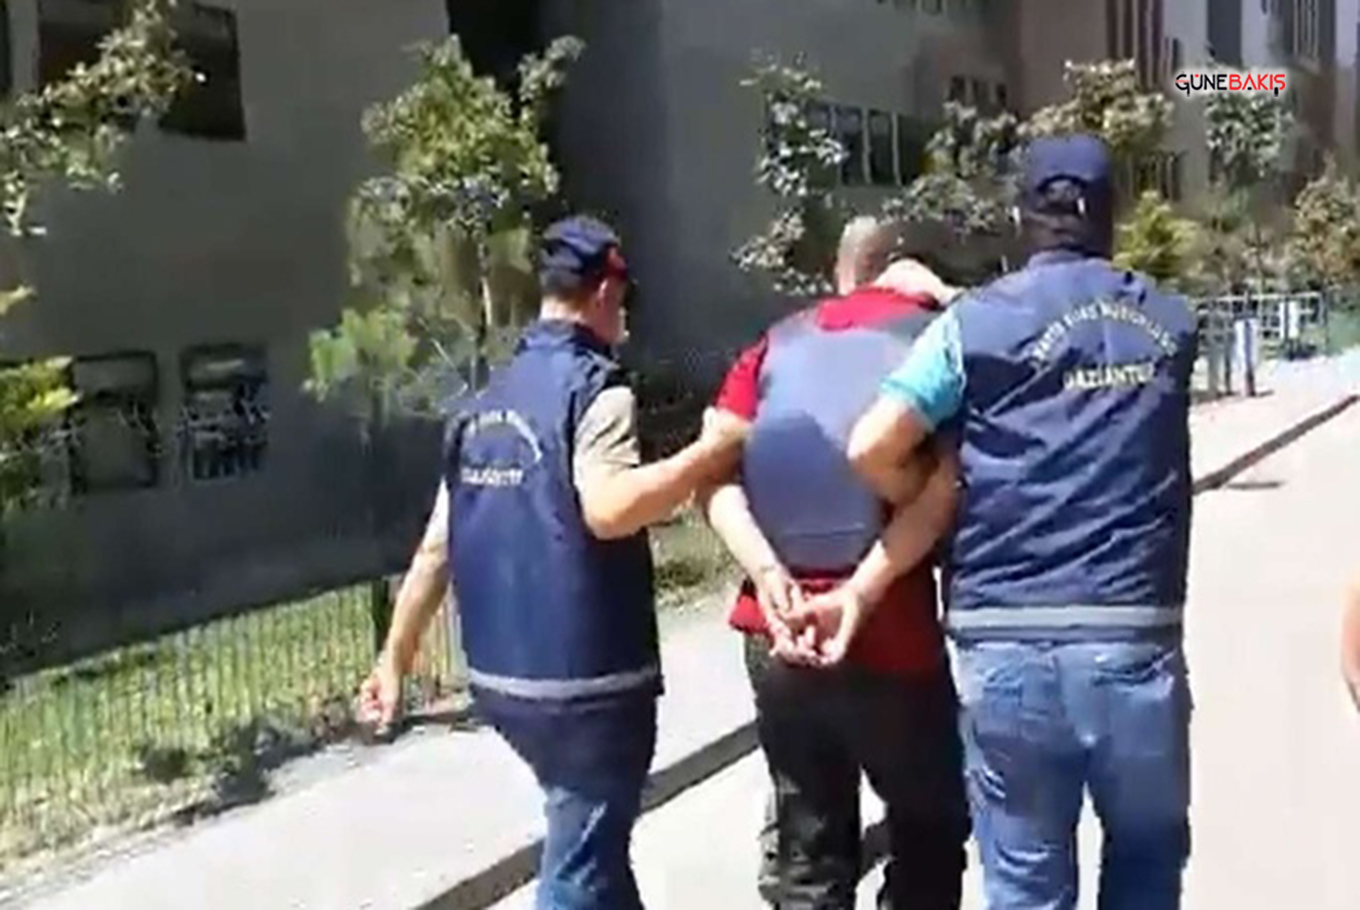 Gaziantep'te öldürme ve yaralama suçlarına karıştığı tespit edilen şüpheli tutuklandı